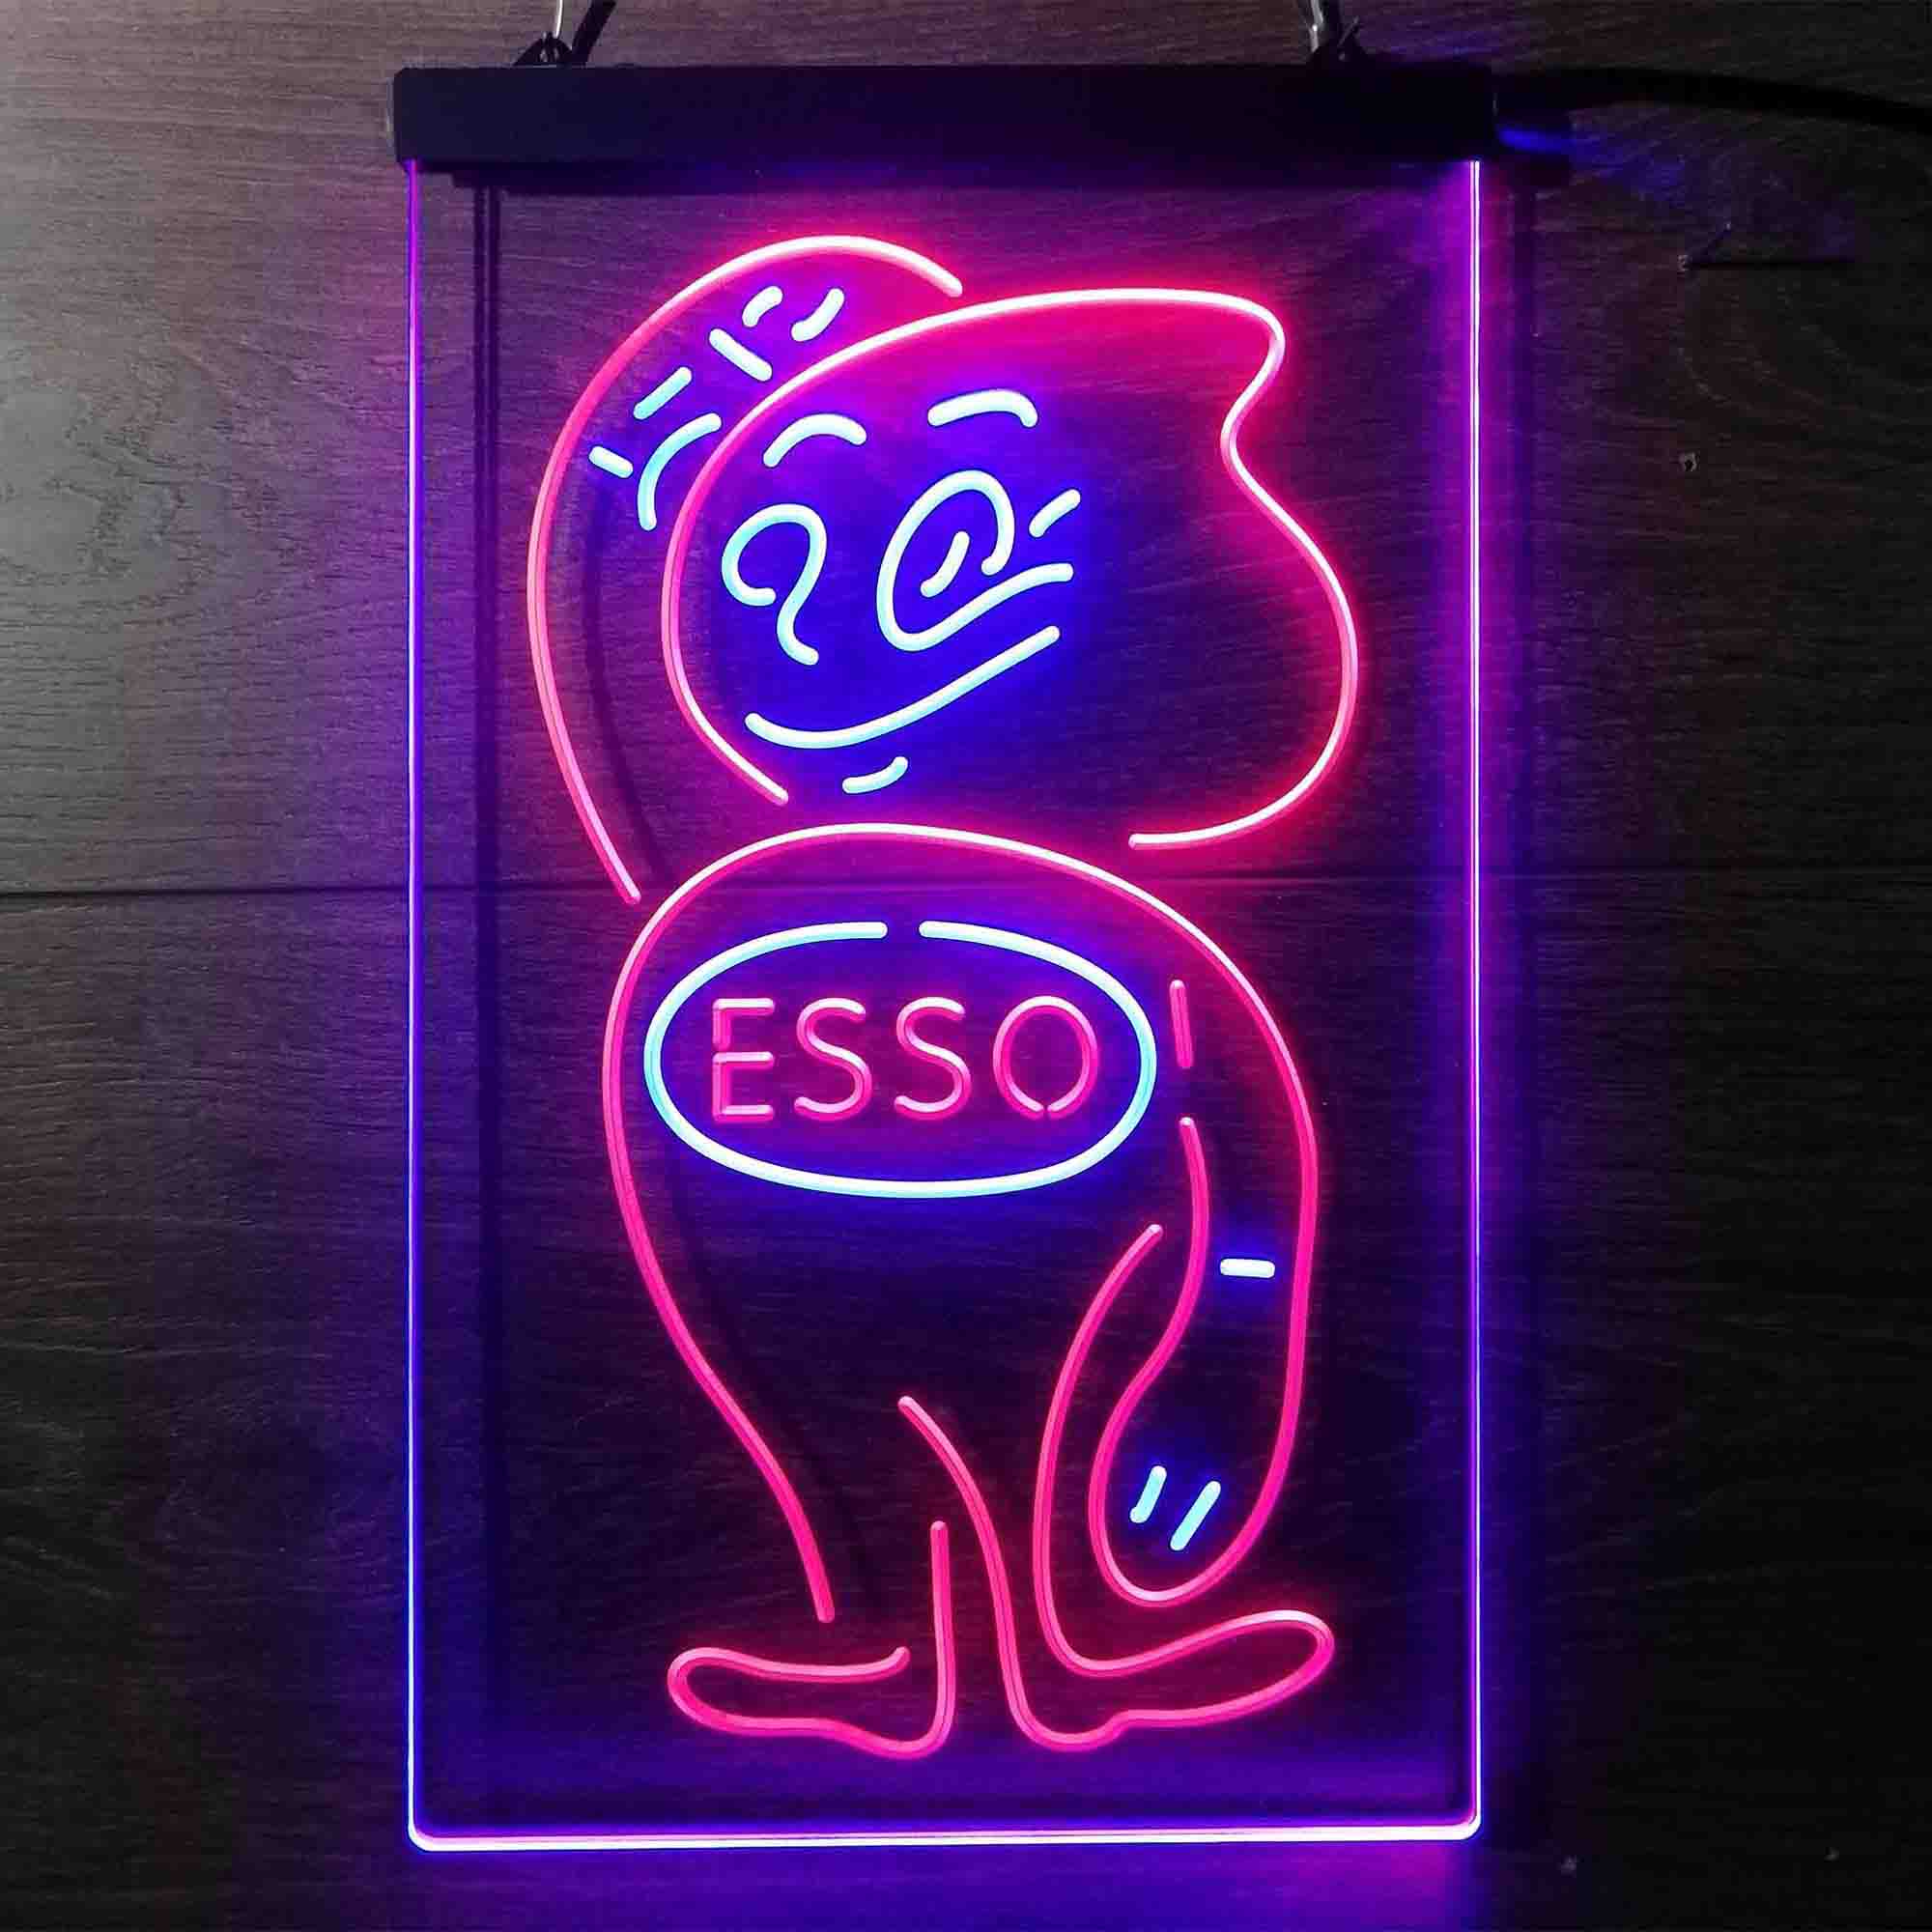 Esso Mascot Oil Gasoline Neon-Like LED Sign